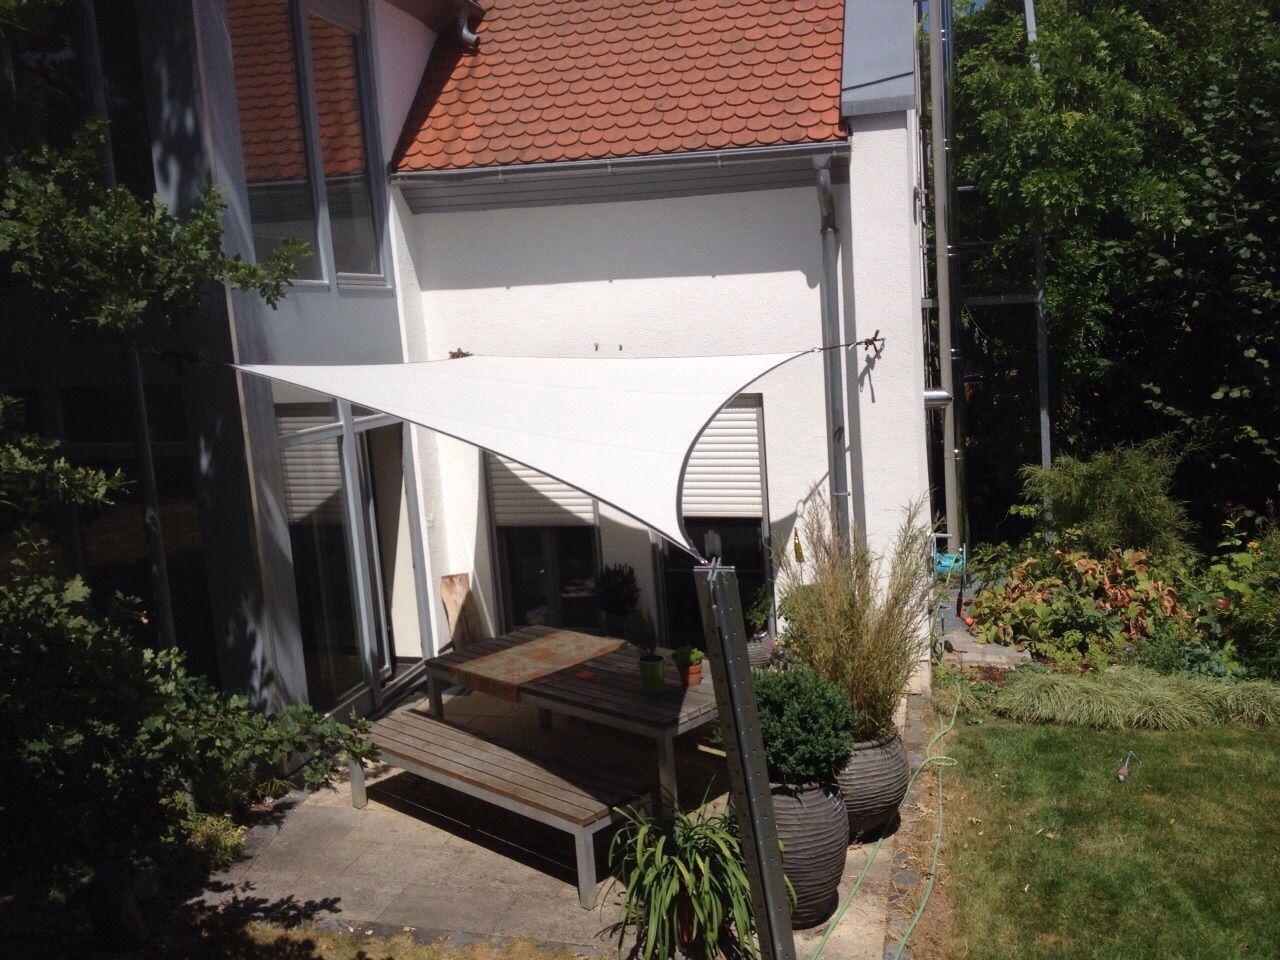 Sonnensegel - Sonnenschutz der Extraklasse, derraumhoch3 derraumhoch3 Balcon, Veranda & Terrasse modernes Accessoires & décorations